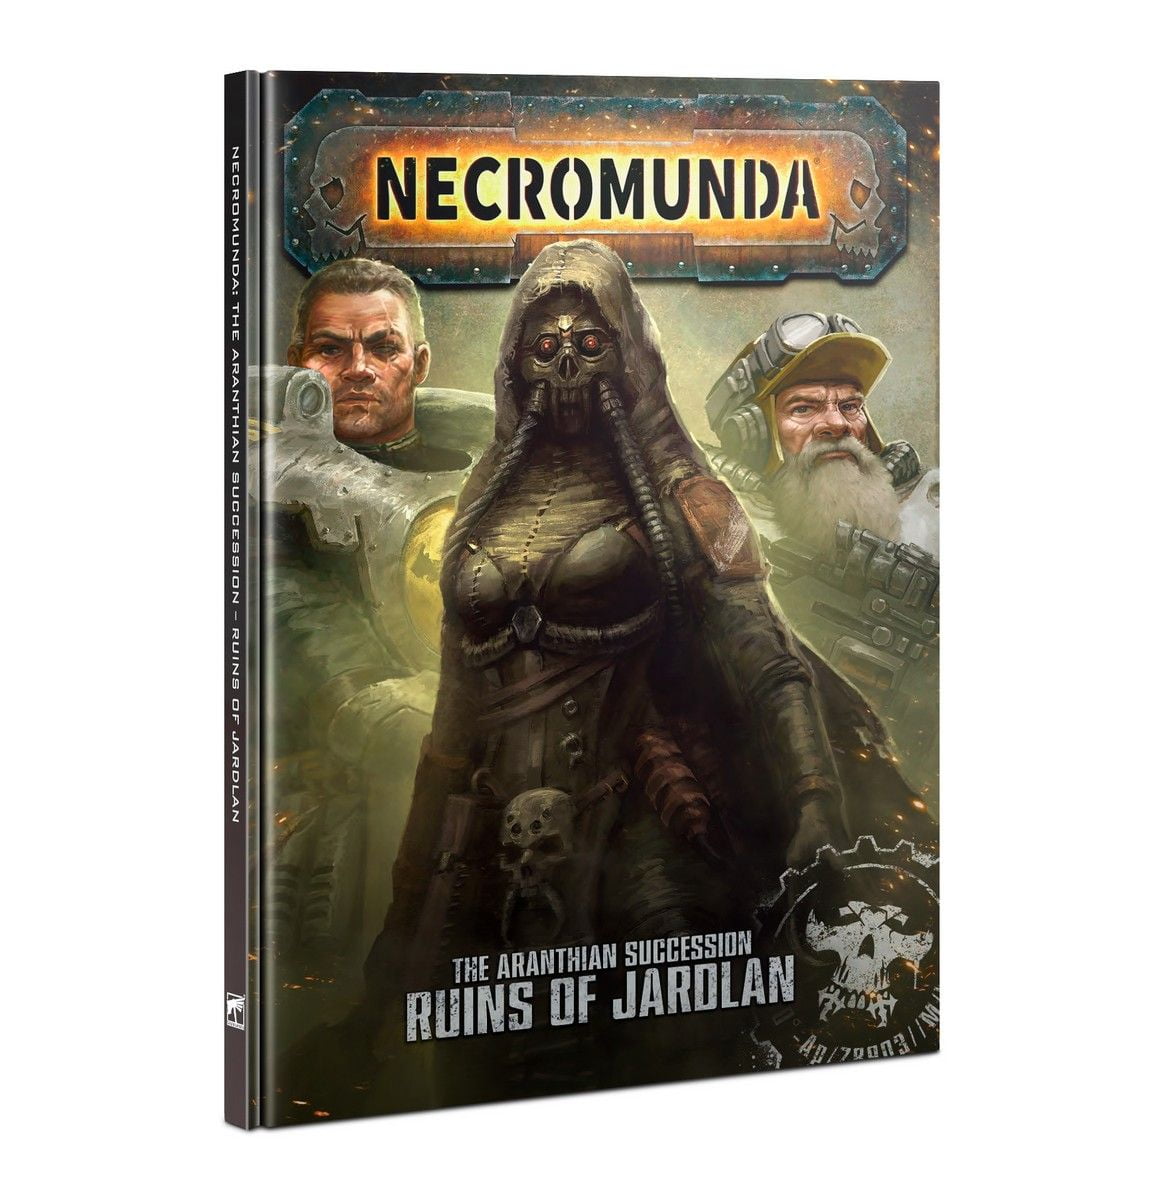 Necromunda: The Aranthian Succession - Ruins of Jardlan